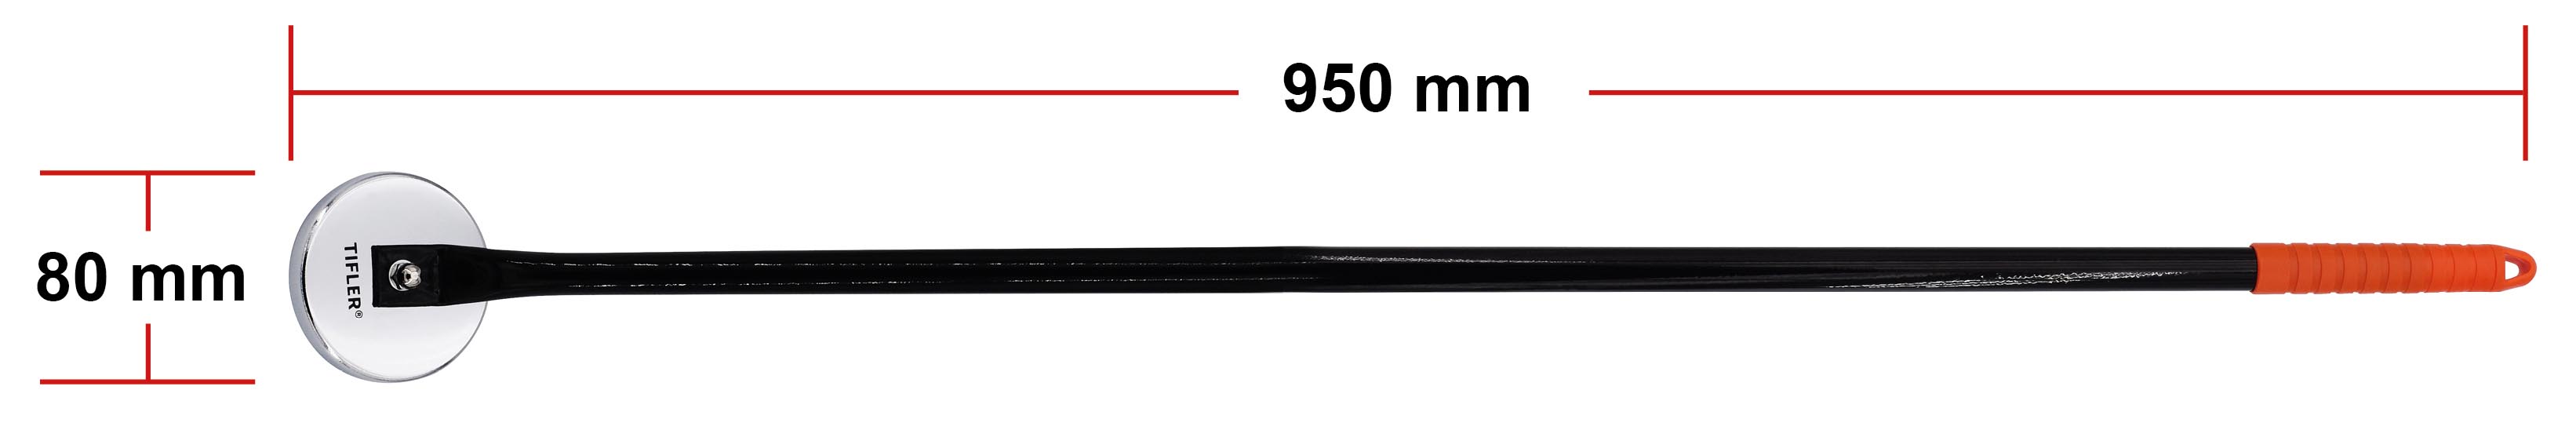 Der Magnetheber hat eine Länge von 950 mm.